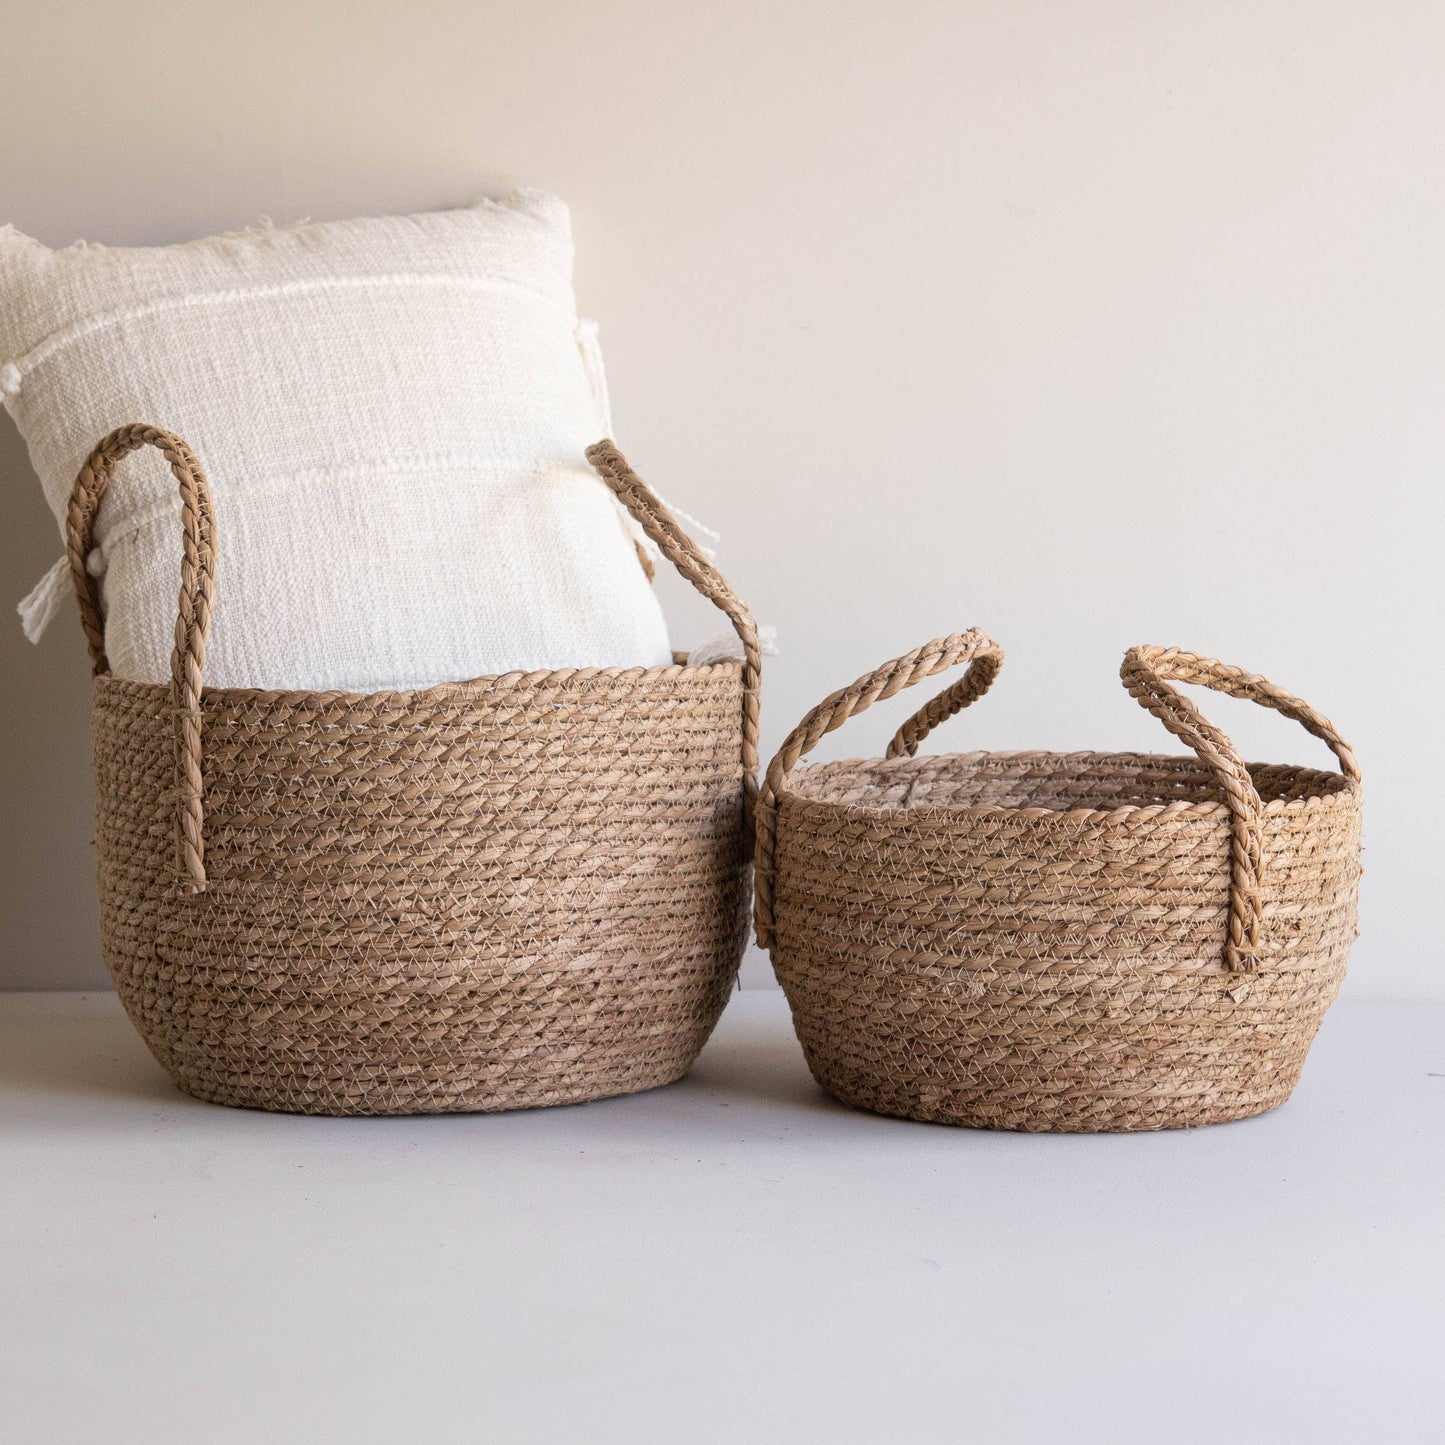 Lina Natural Woven Baskets